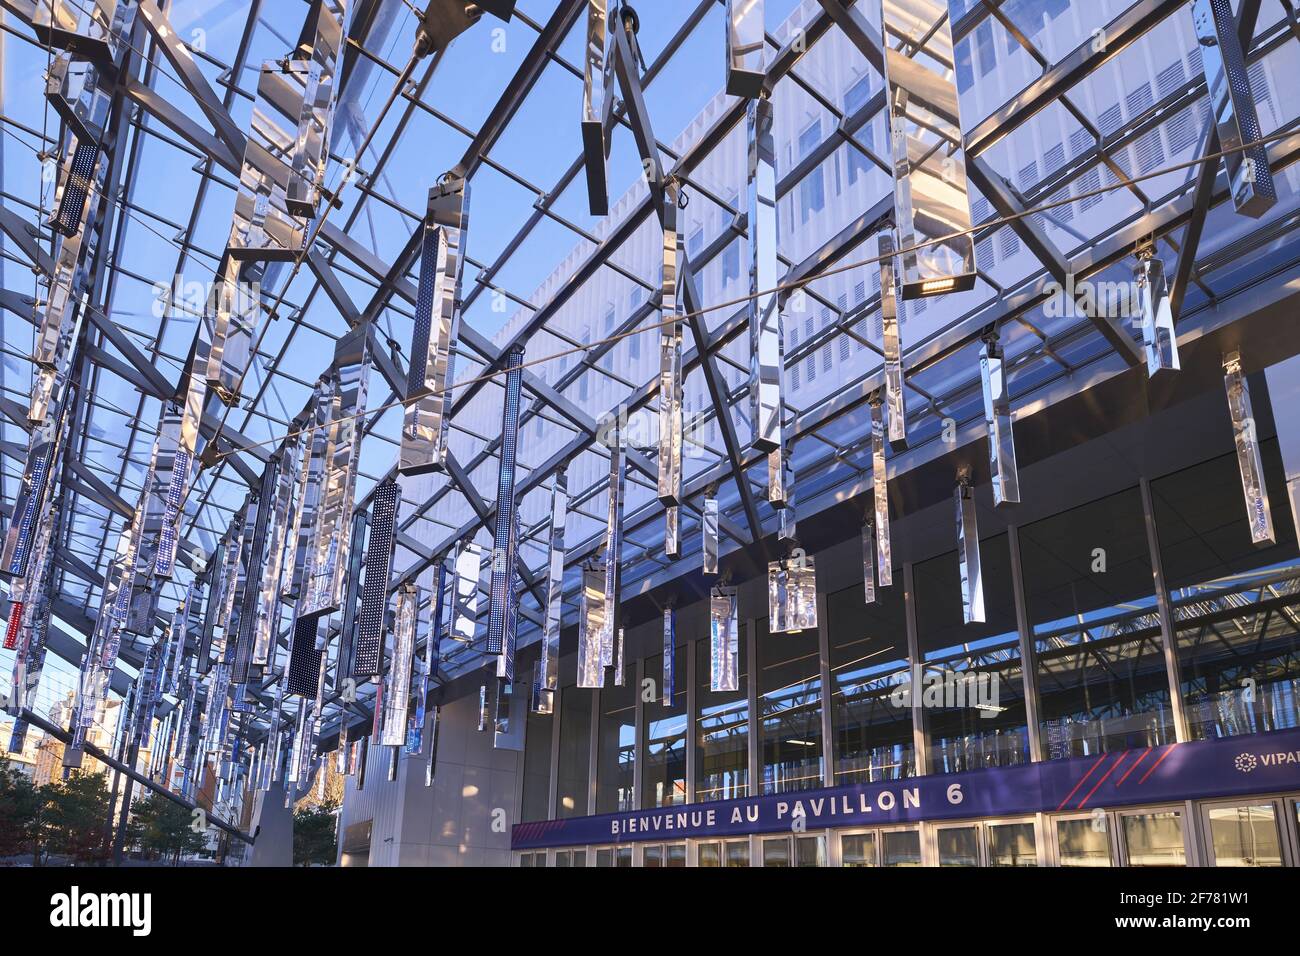 France, Paris, Paris Expo Porte de Versailles, the largest French  exhibition center, the mobile awning of Pavilion 6 Stock Photo - Alamy